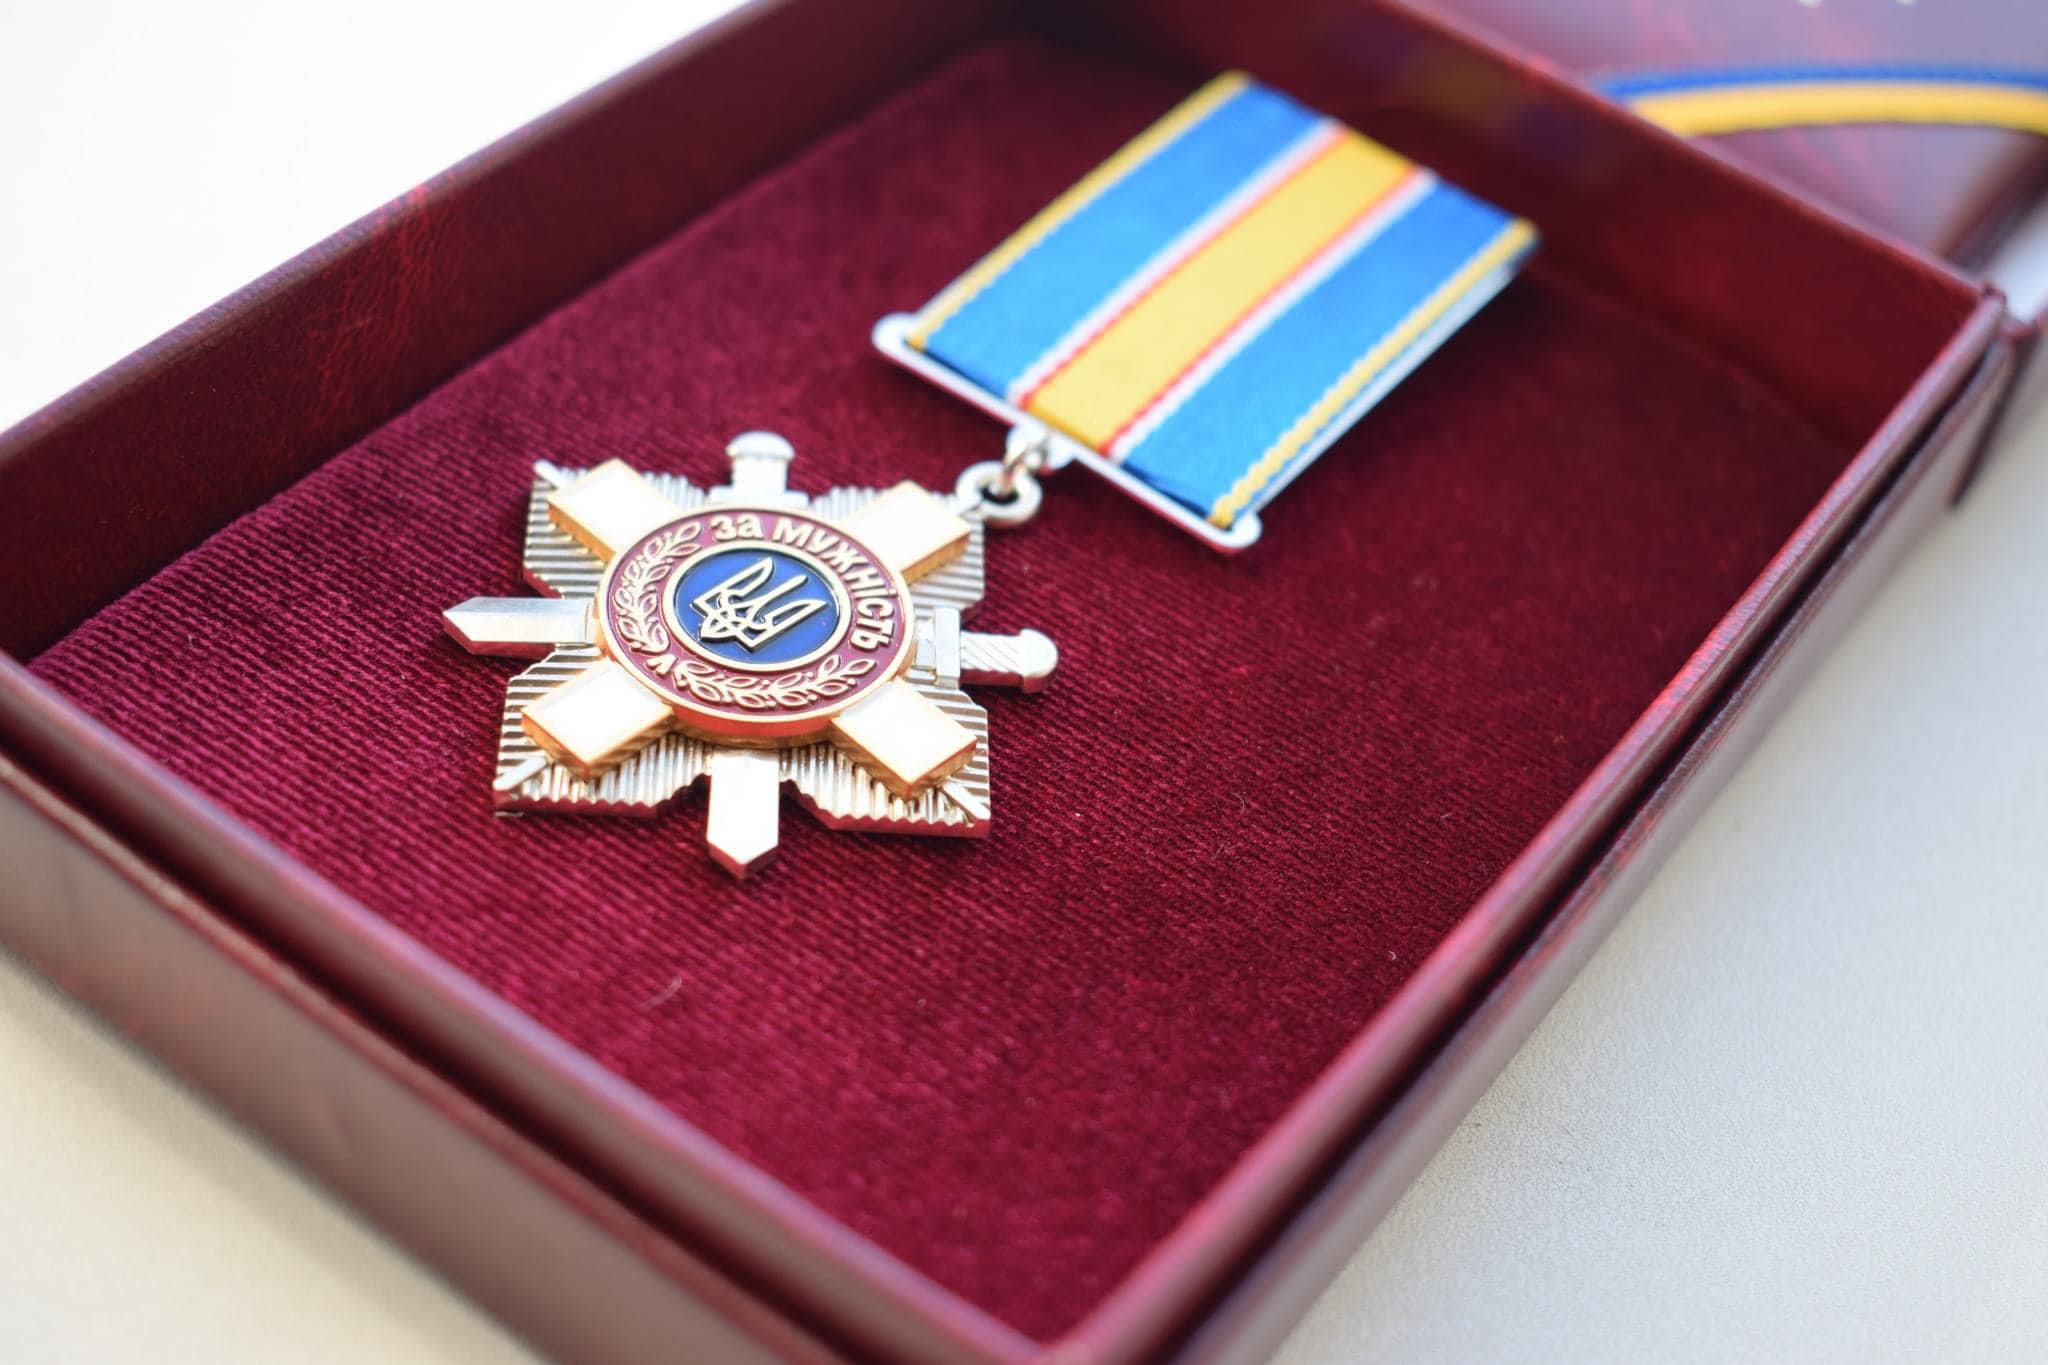 Буковинця посмертно нагородили орденом «За мужність» III ступеня